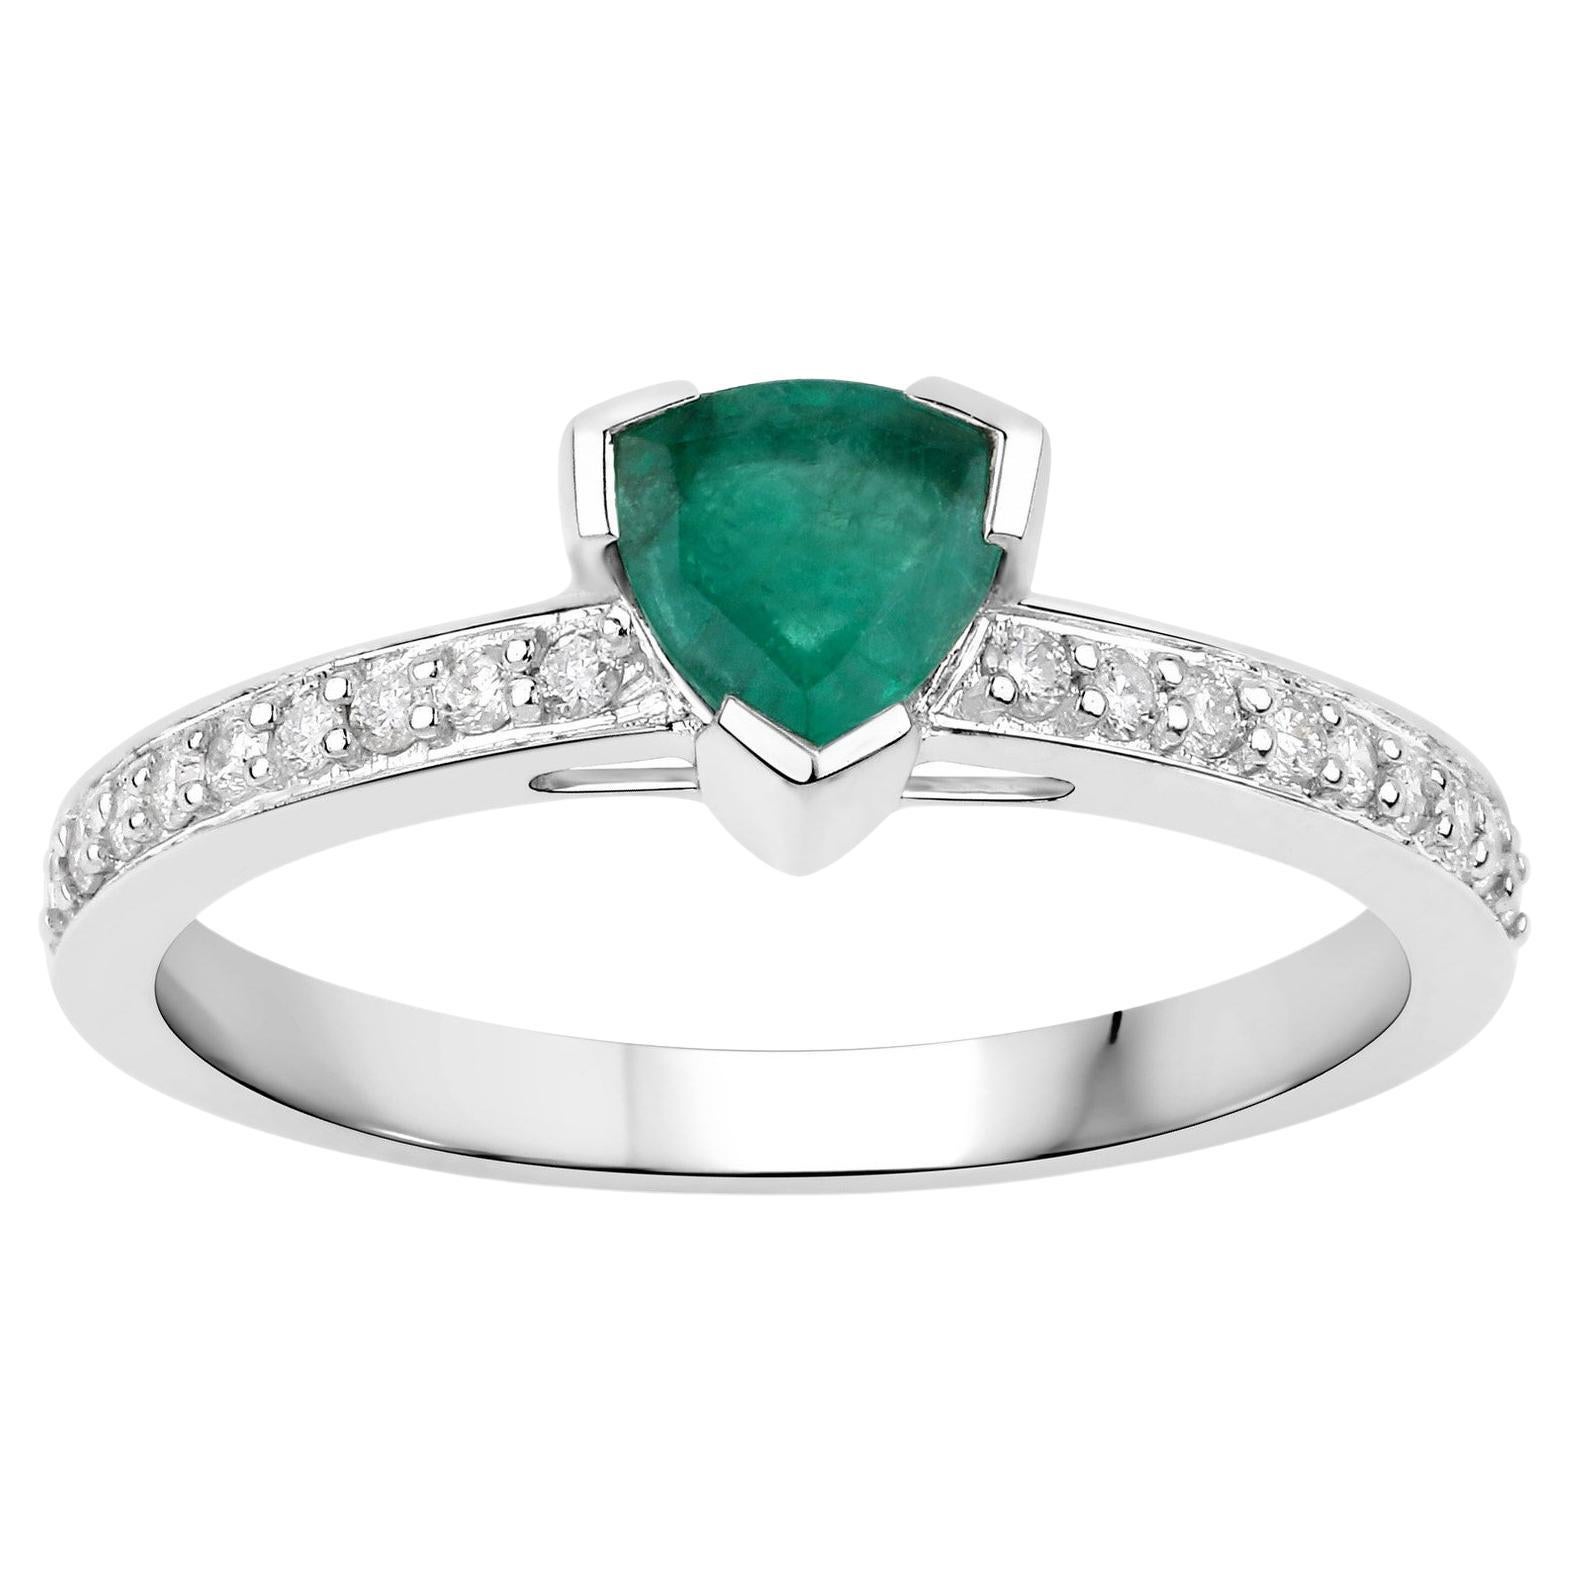 Natural Zambian Trillion Cut Emerald Ring Diamond Setting 14K White Gold